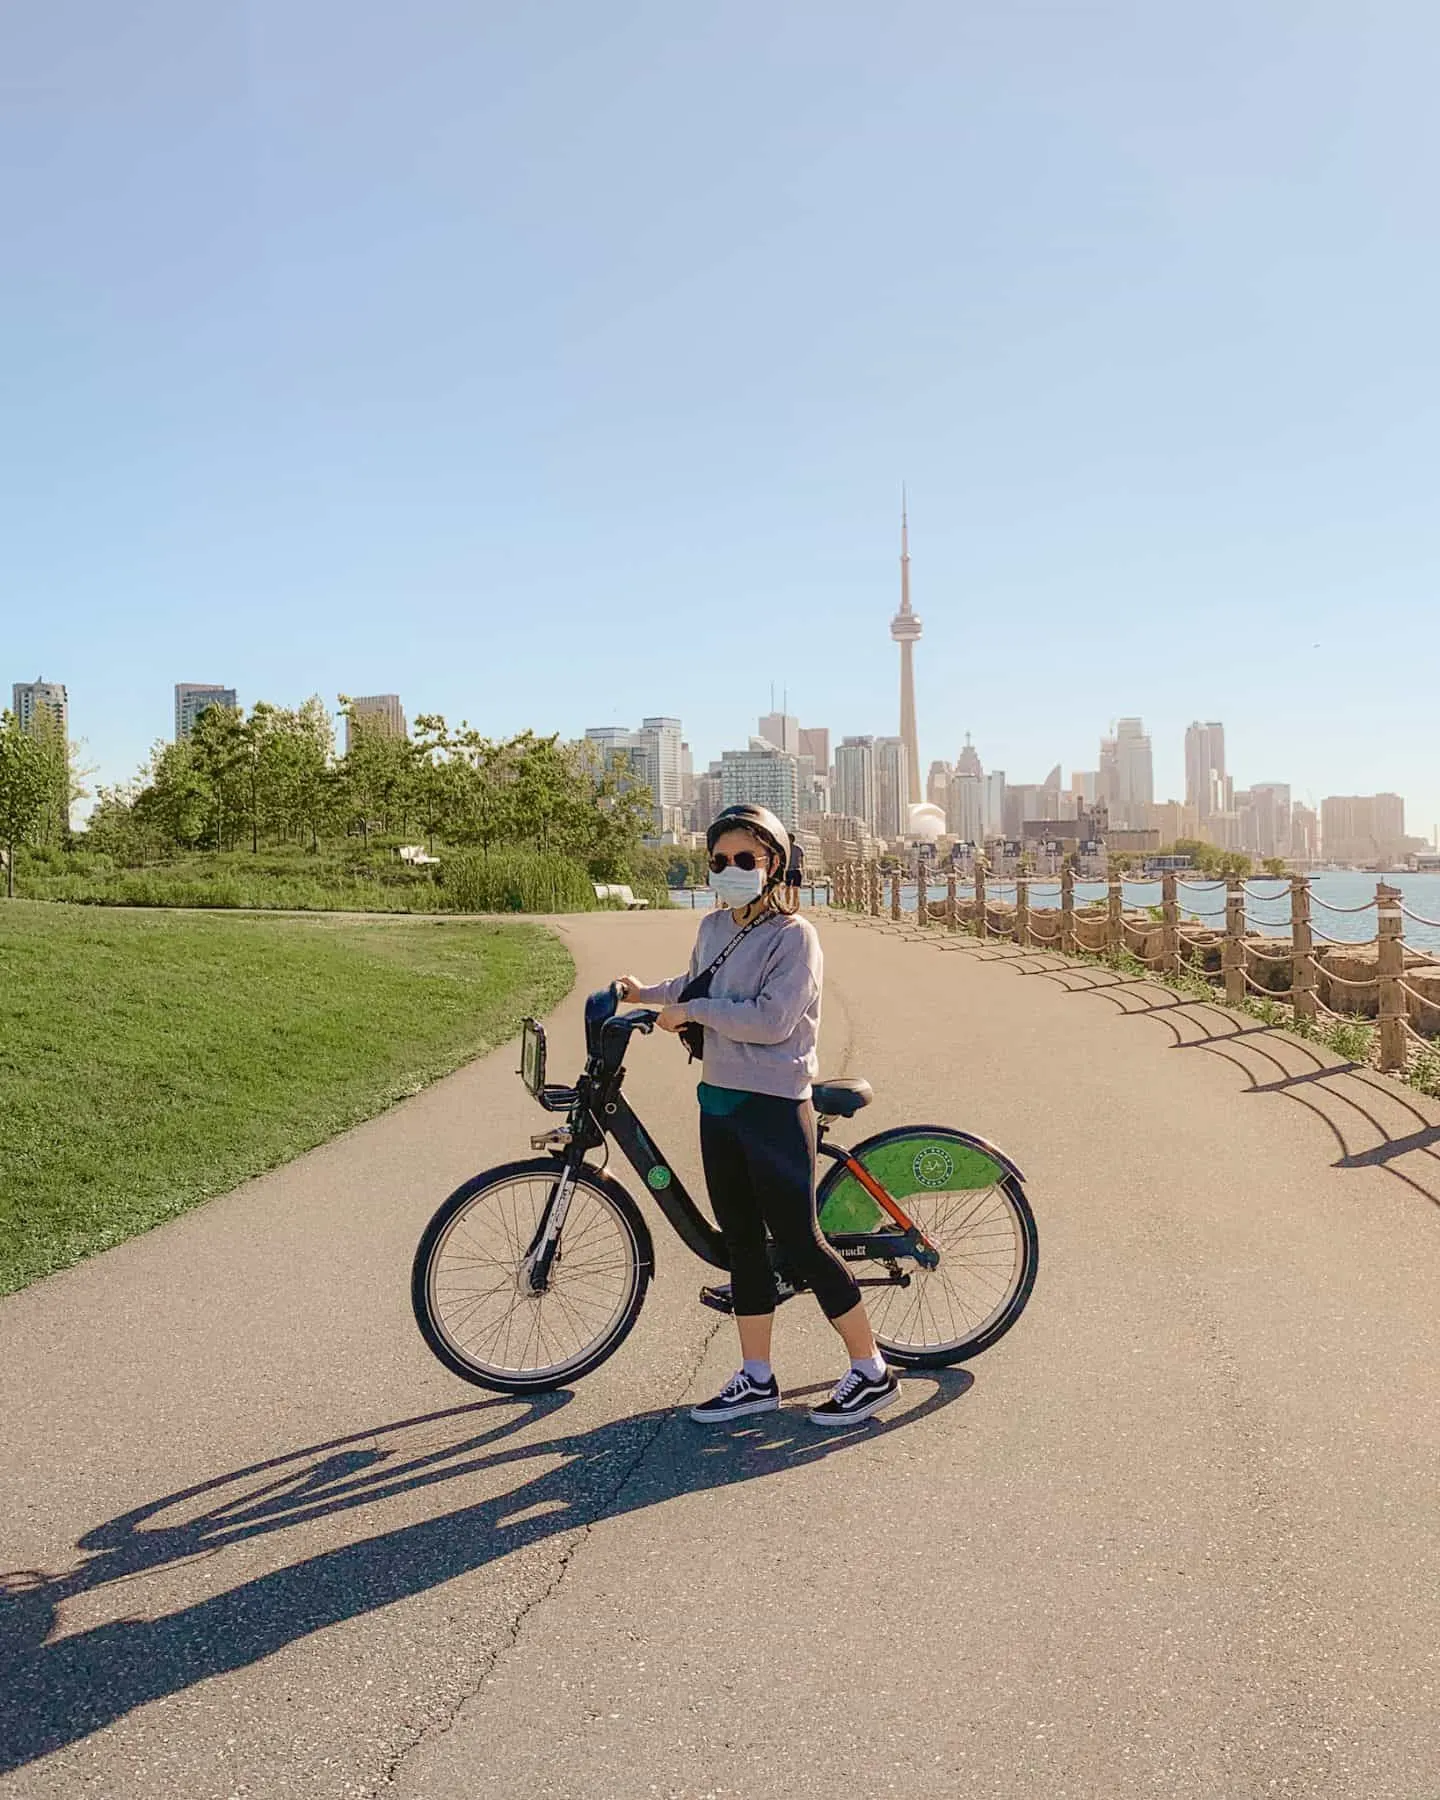 Biking at Trillium Park in Toronto, Ontario